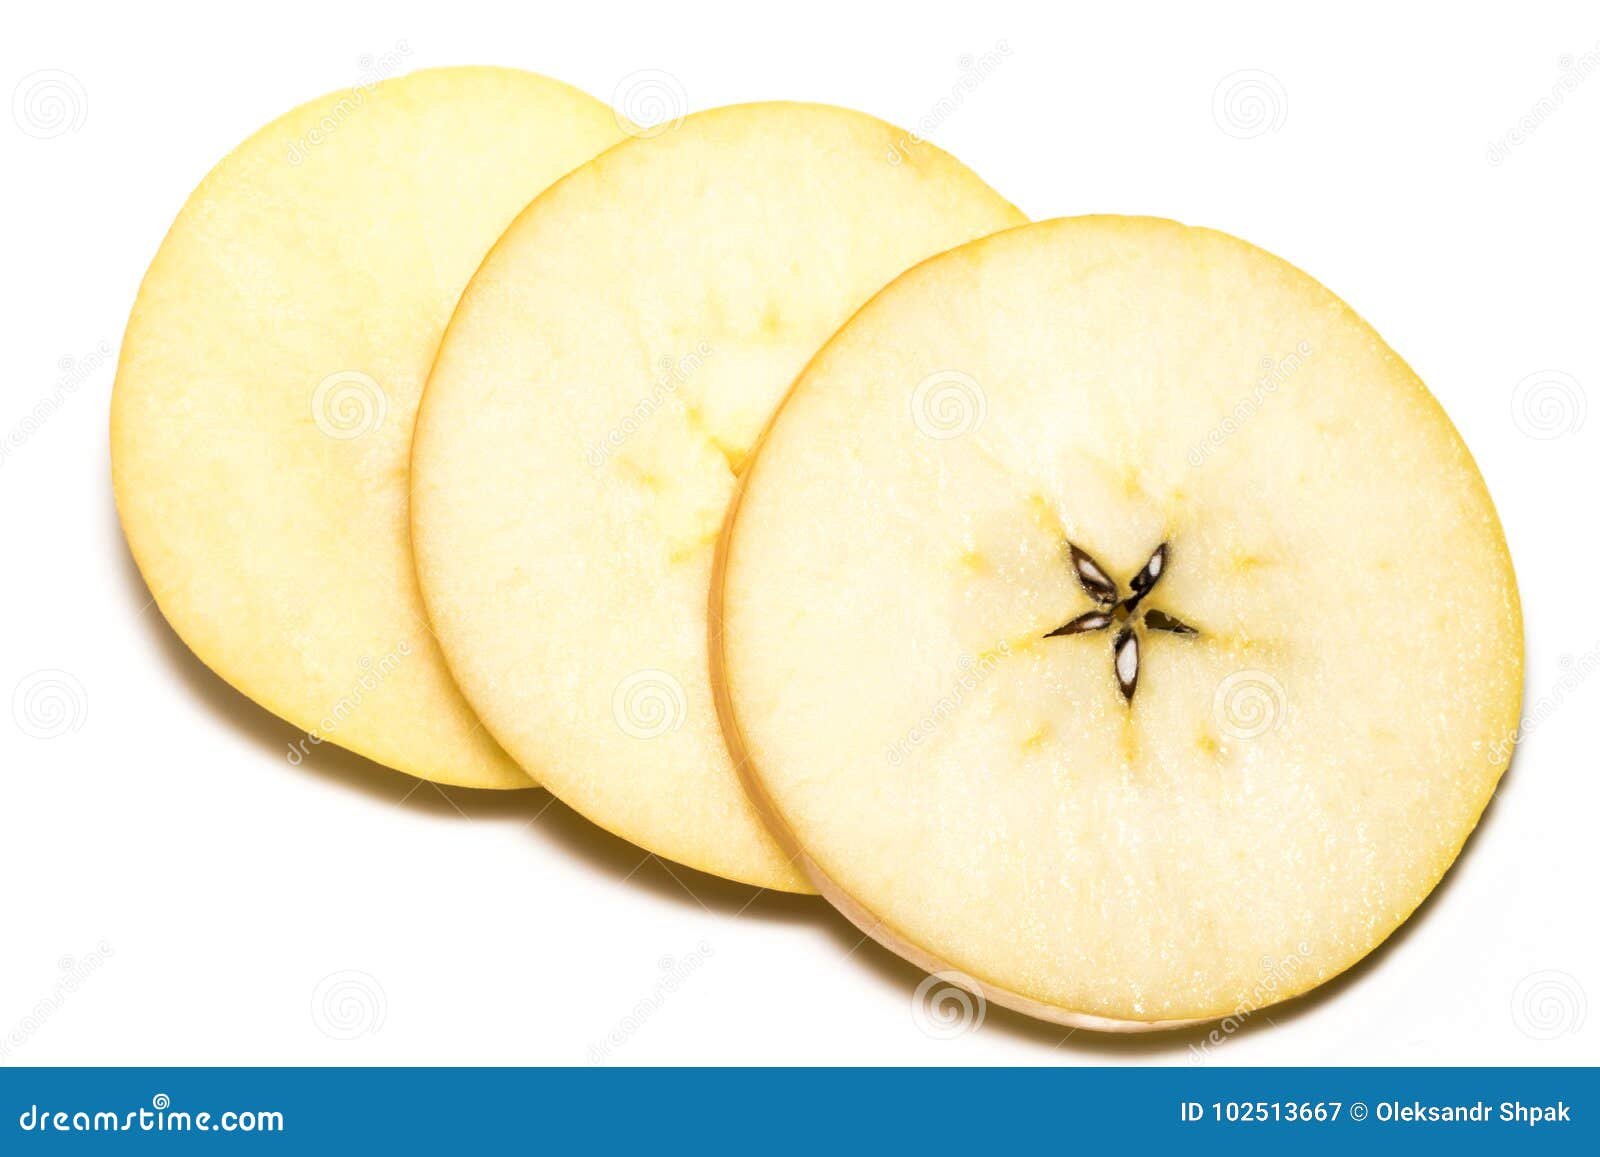 Slice Of Yellow Apple Fruit Isolated On White Background Stock Image ...